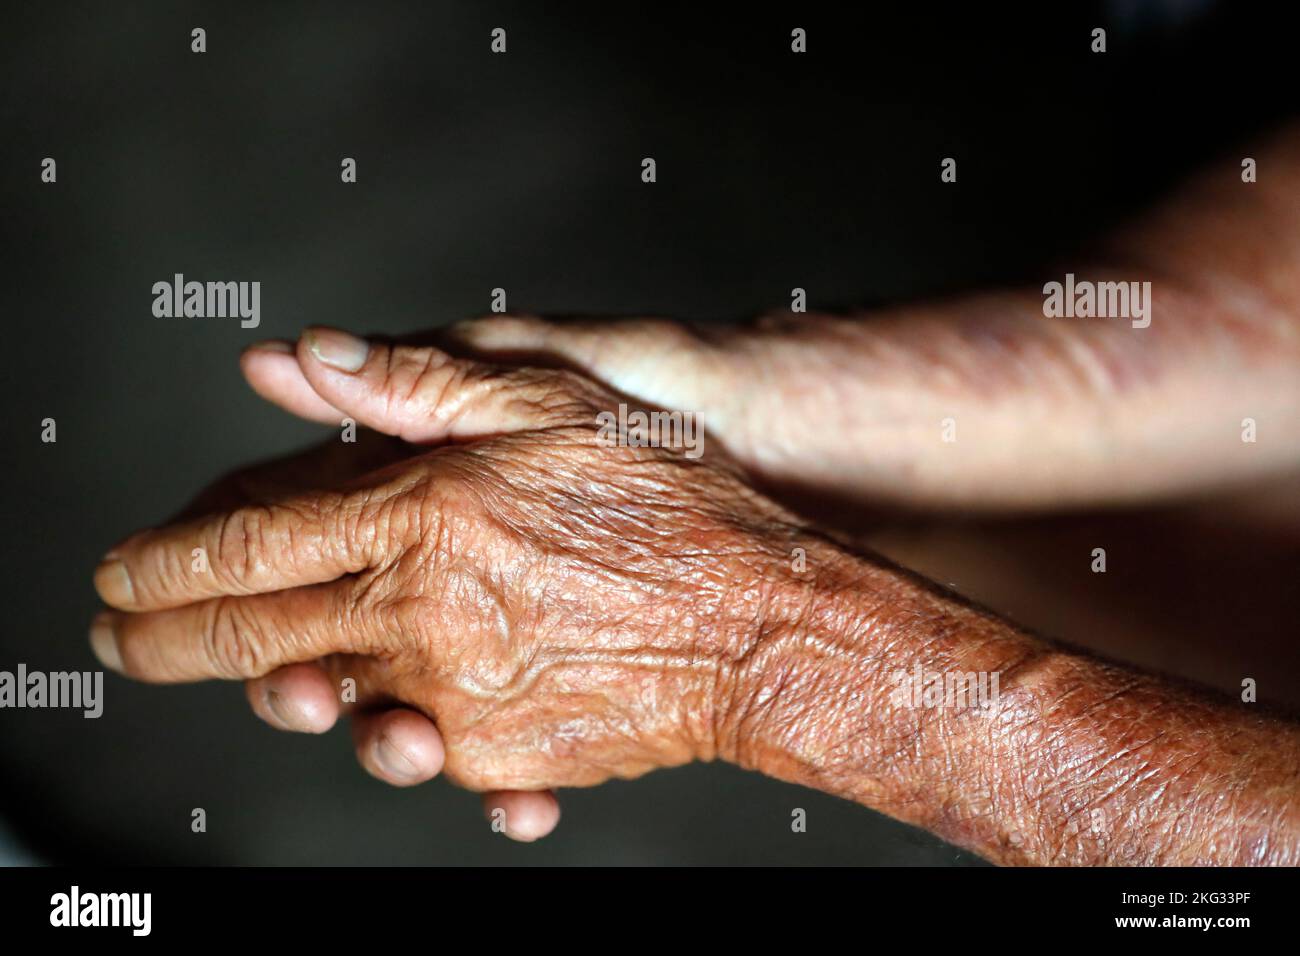 Gros plan des mains d'un homme âgé de 80 ans. Chau Havane. Vietnam. Banque D'Images